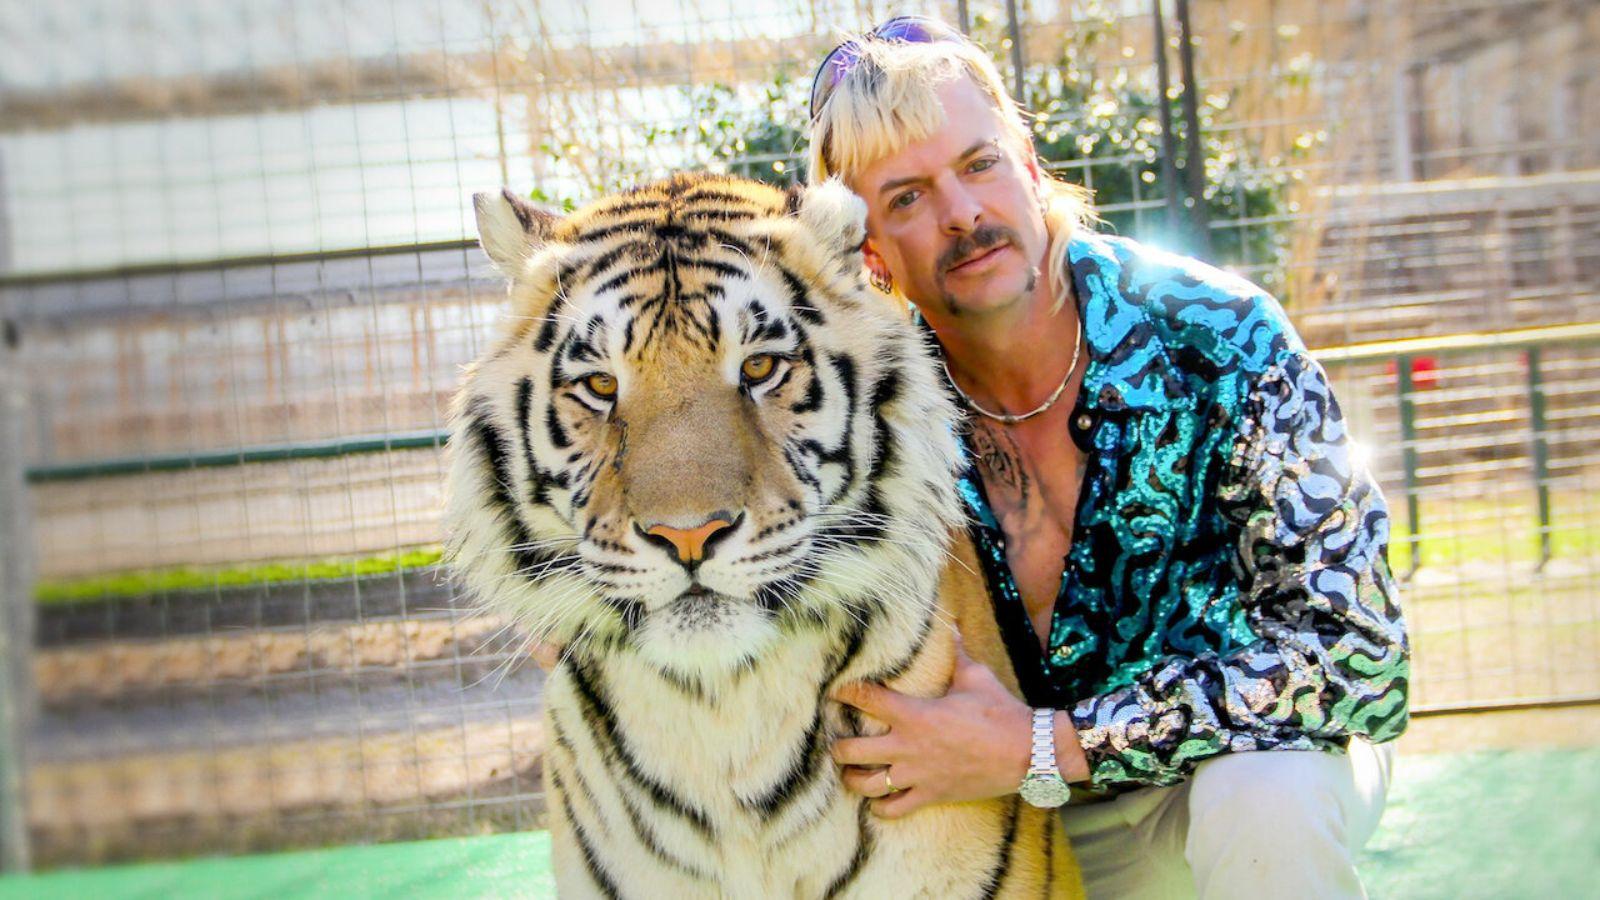 A still of Joe Exotic in Tiger King